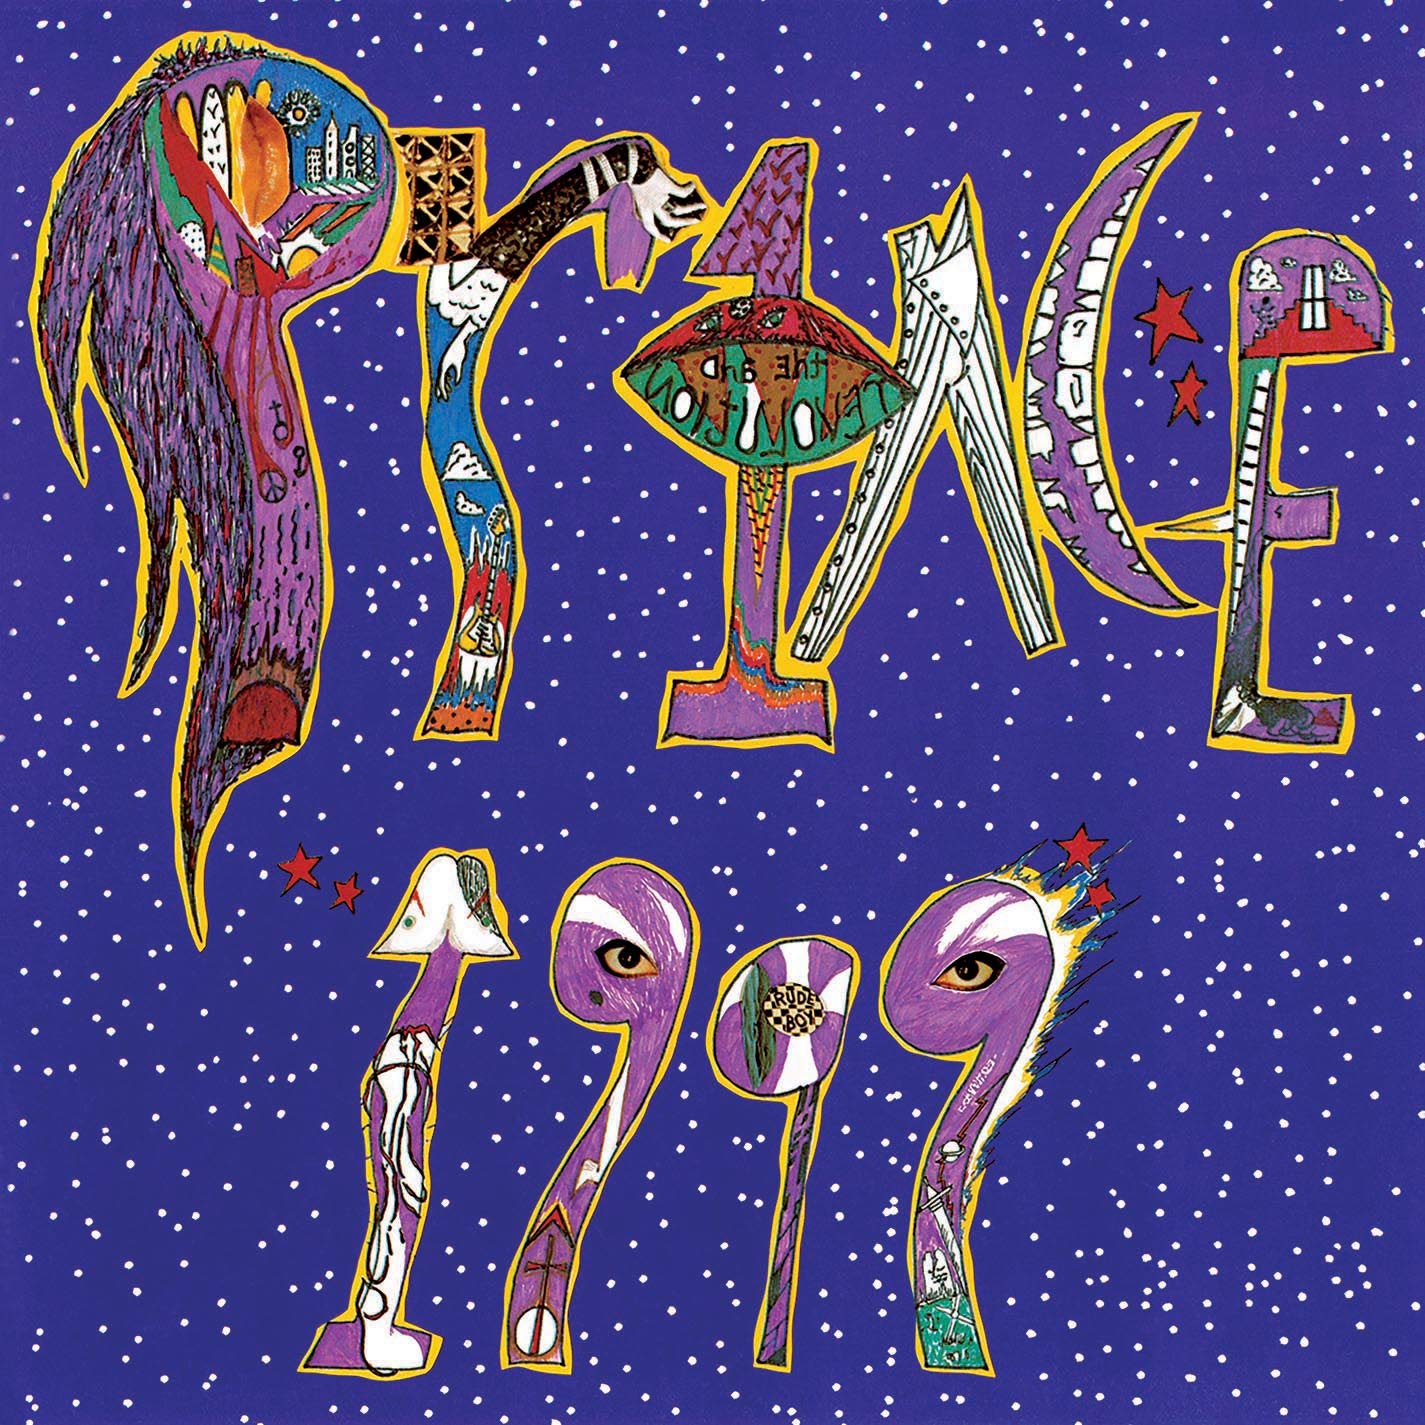 Prince - 1999 - 2CD